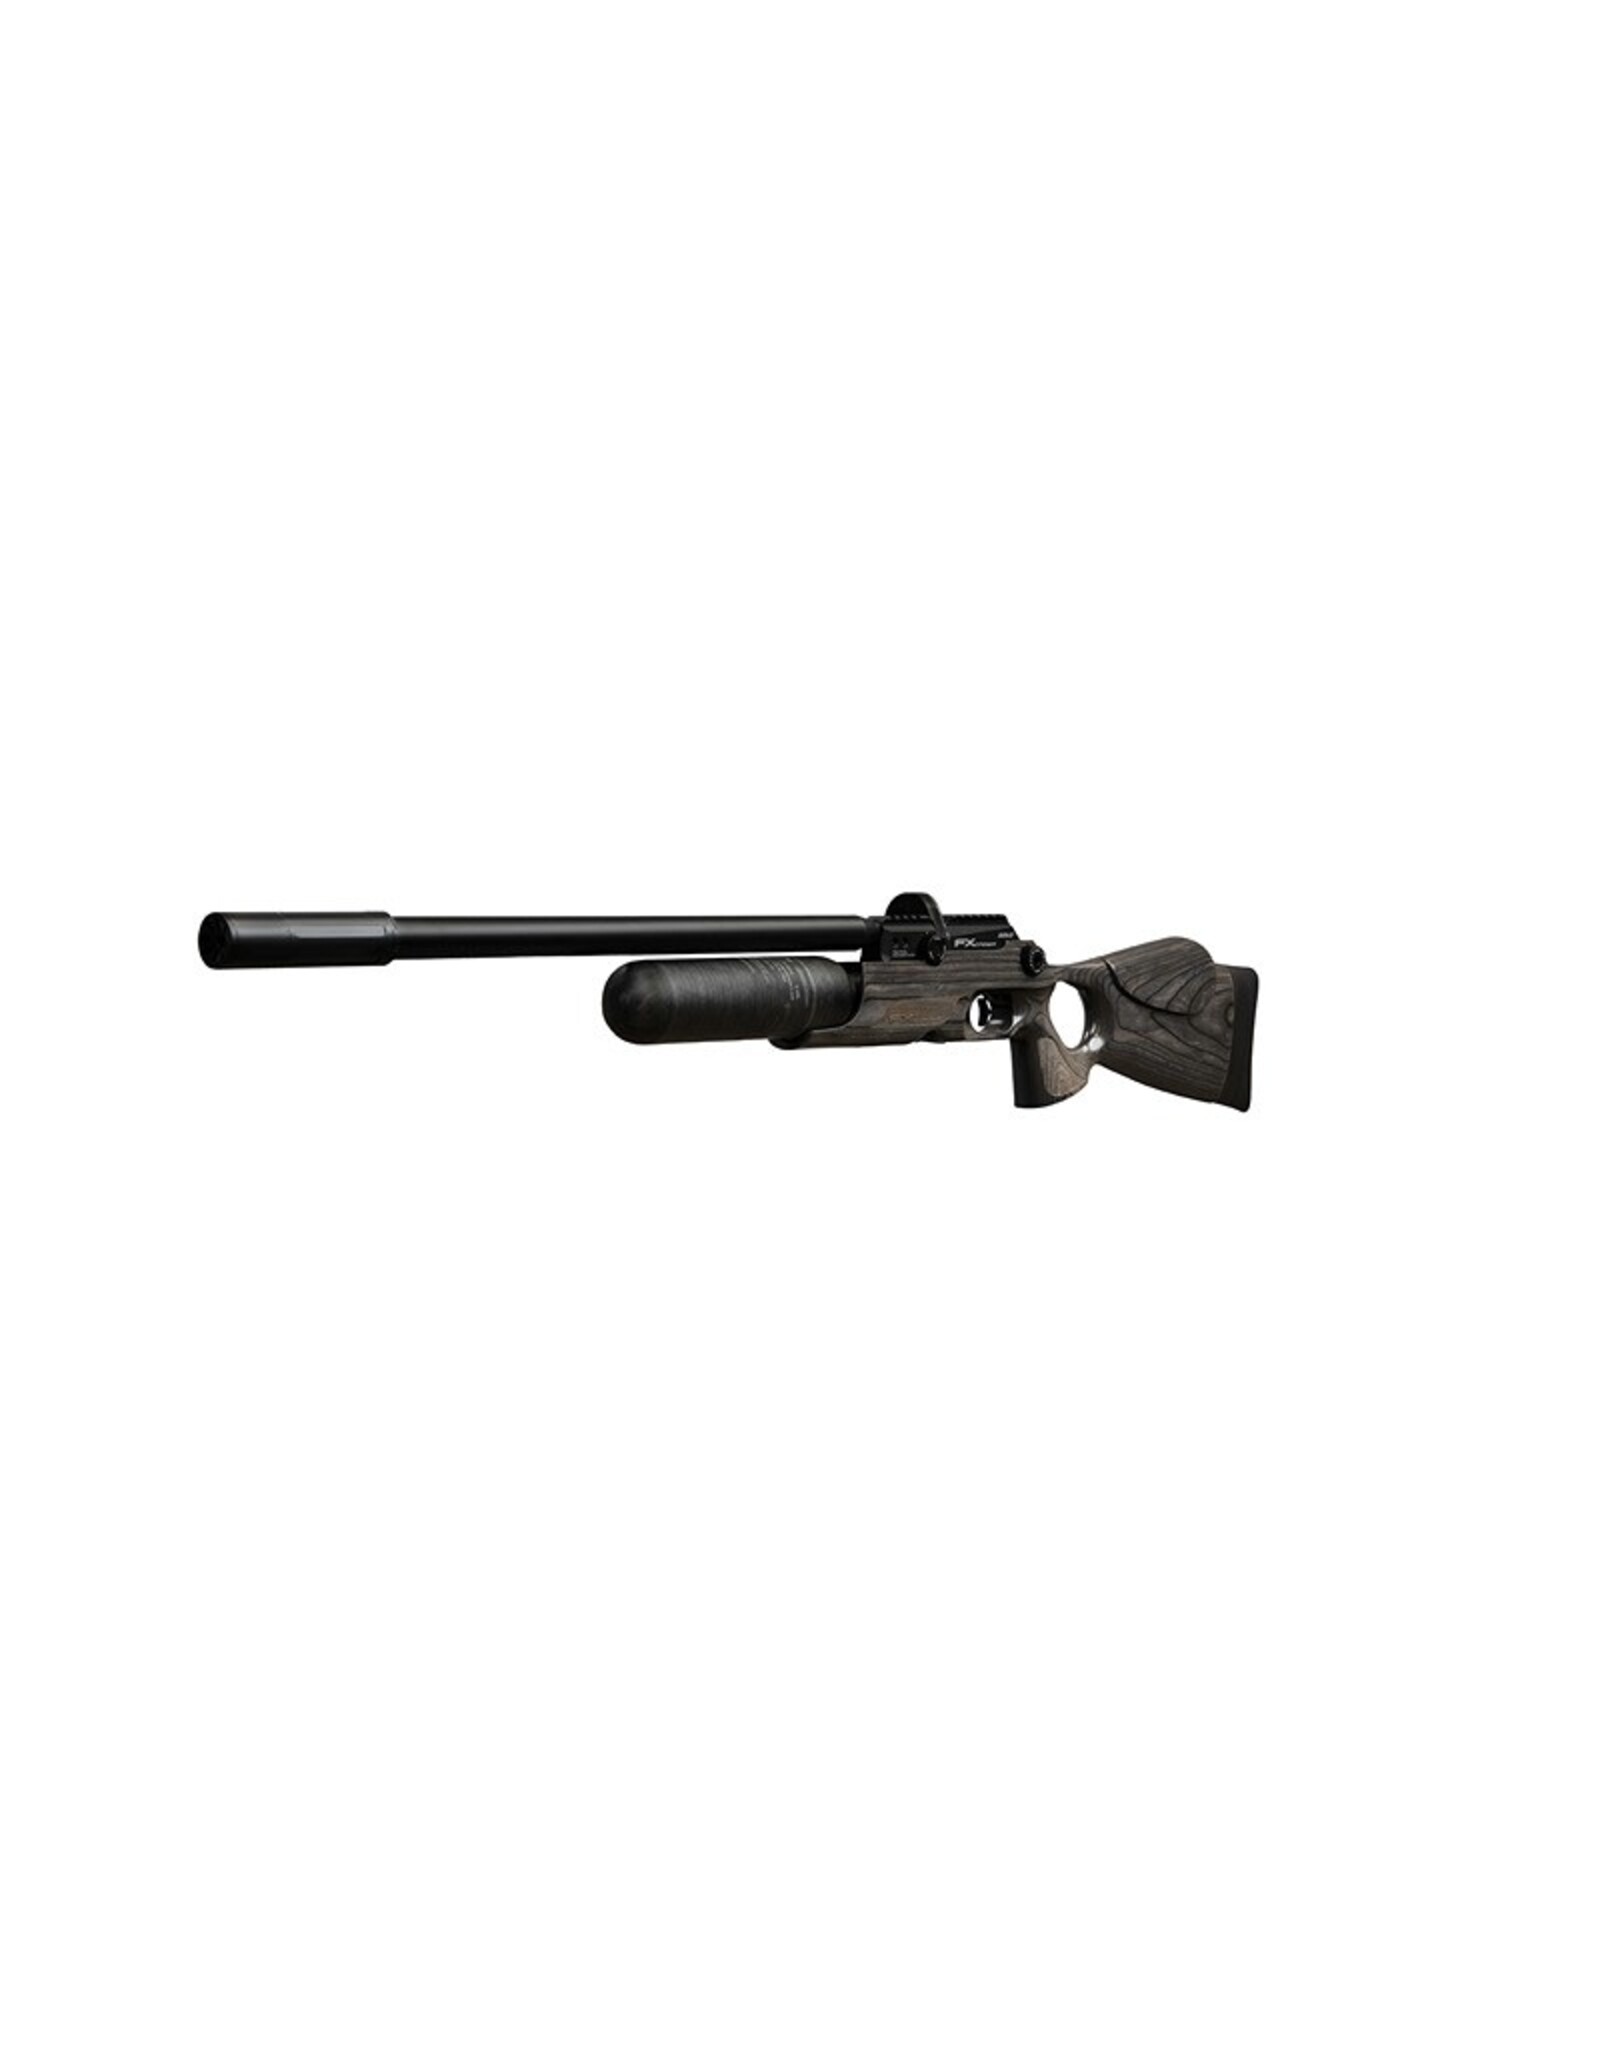 FX Airguns FX Crown MKII Standard, Black Pepper Laminate  - 0.25 caliber